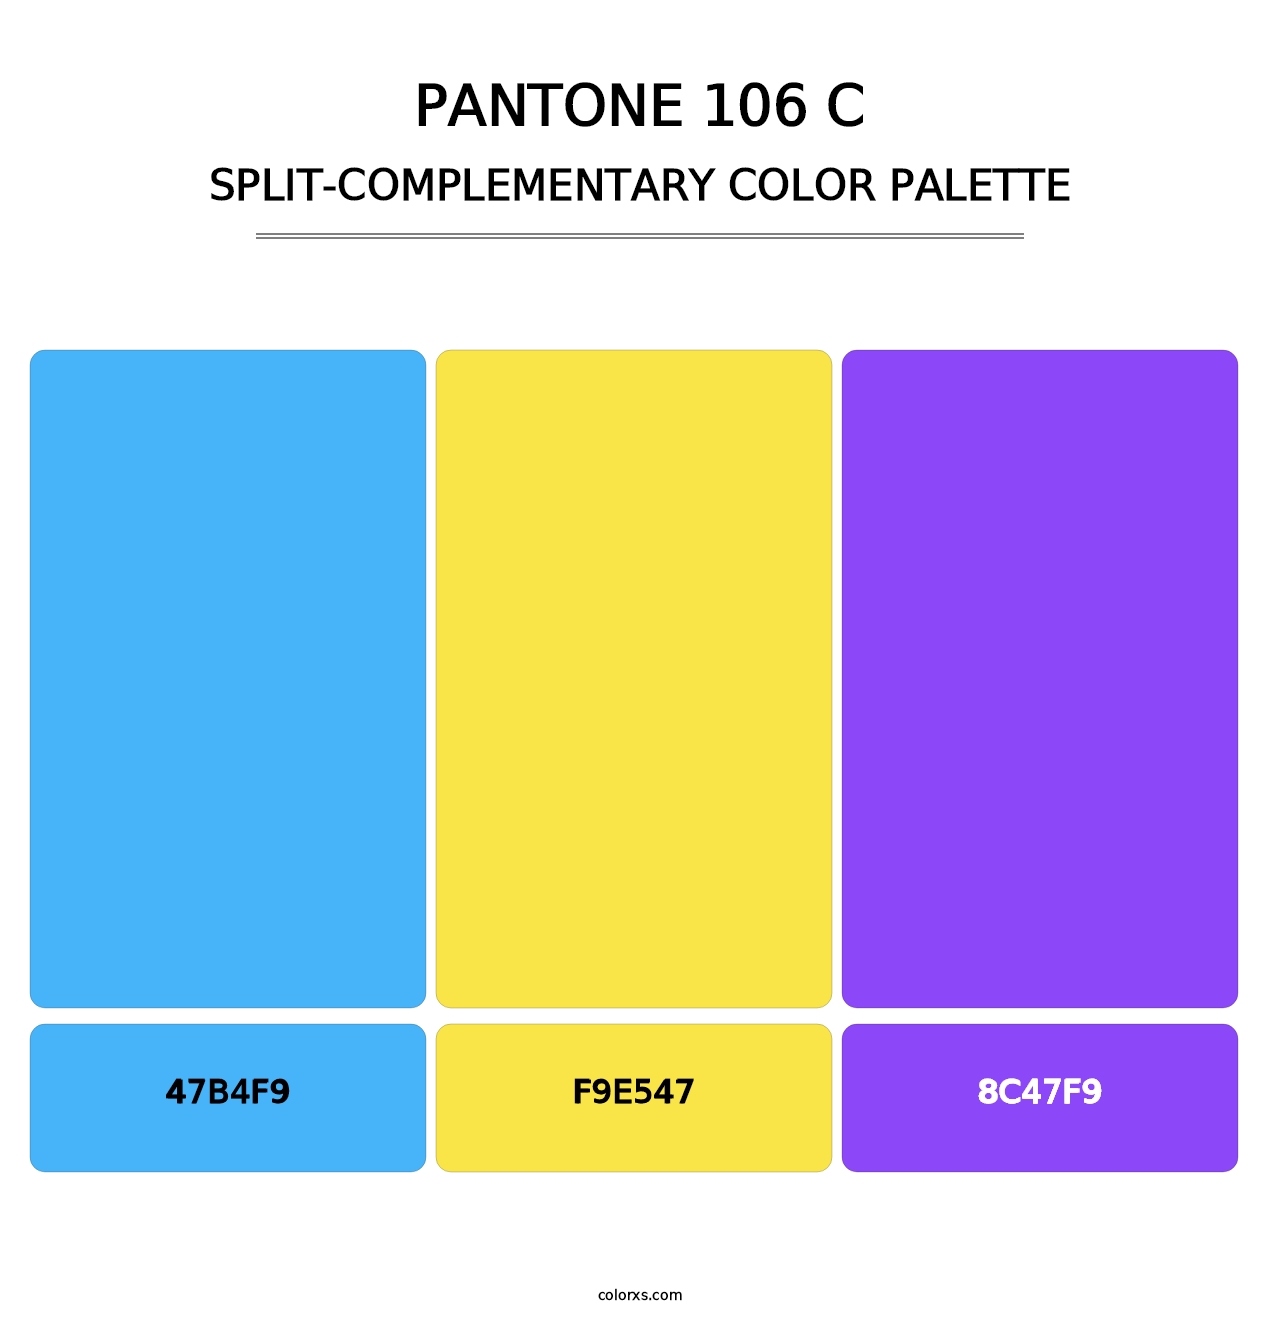 PANTONE 106 C - Split-Complementary Color Palette